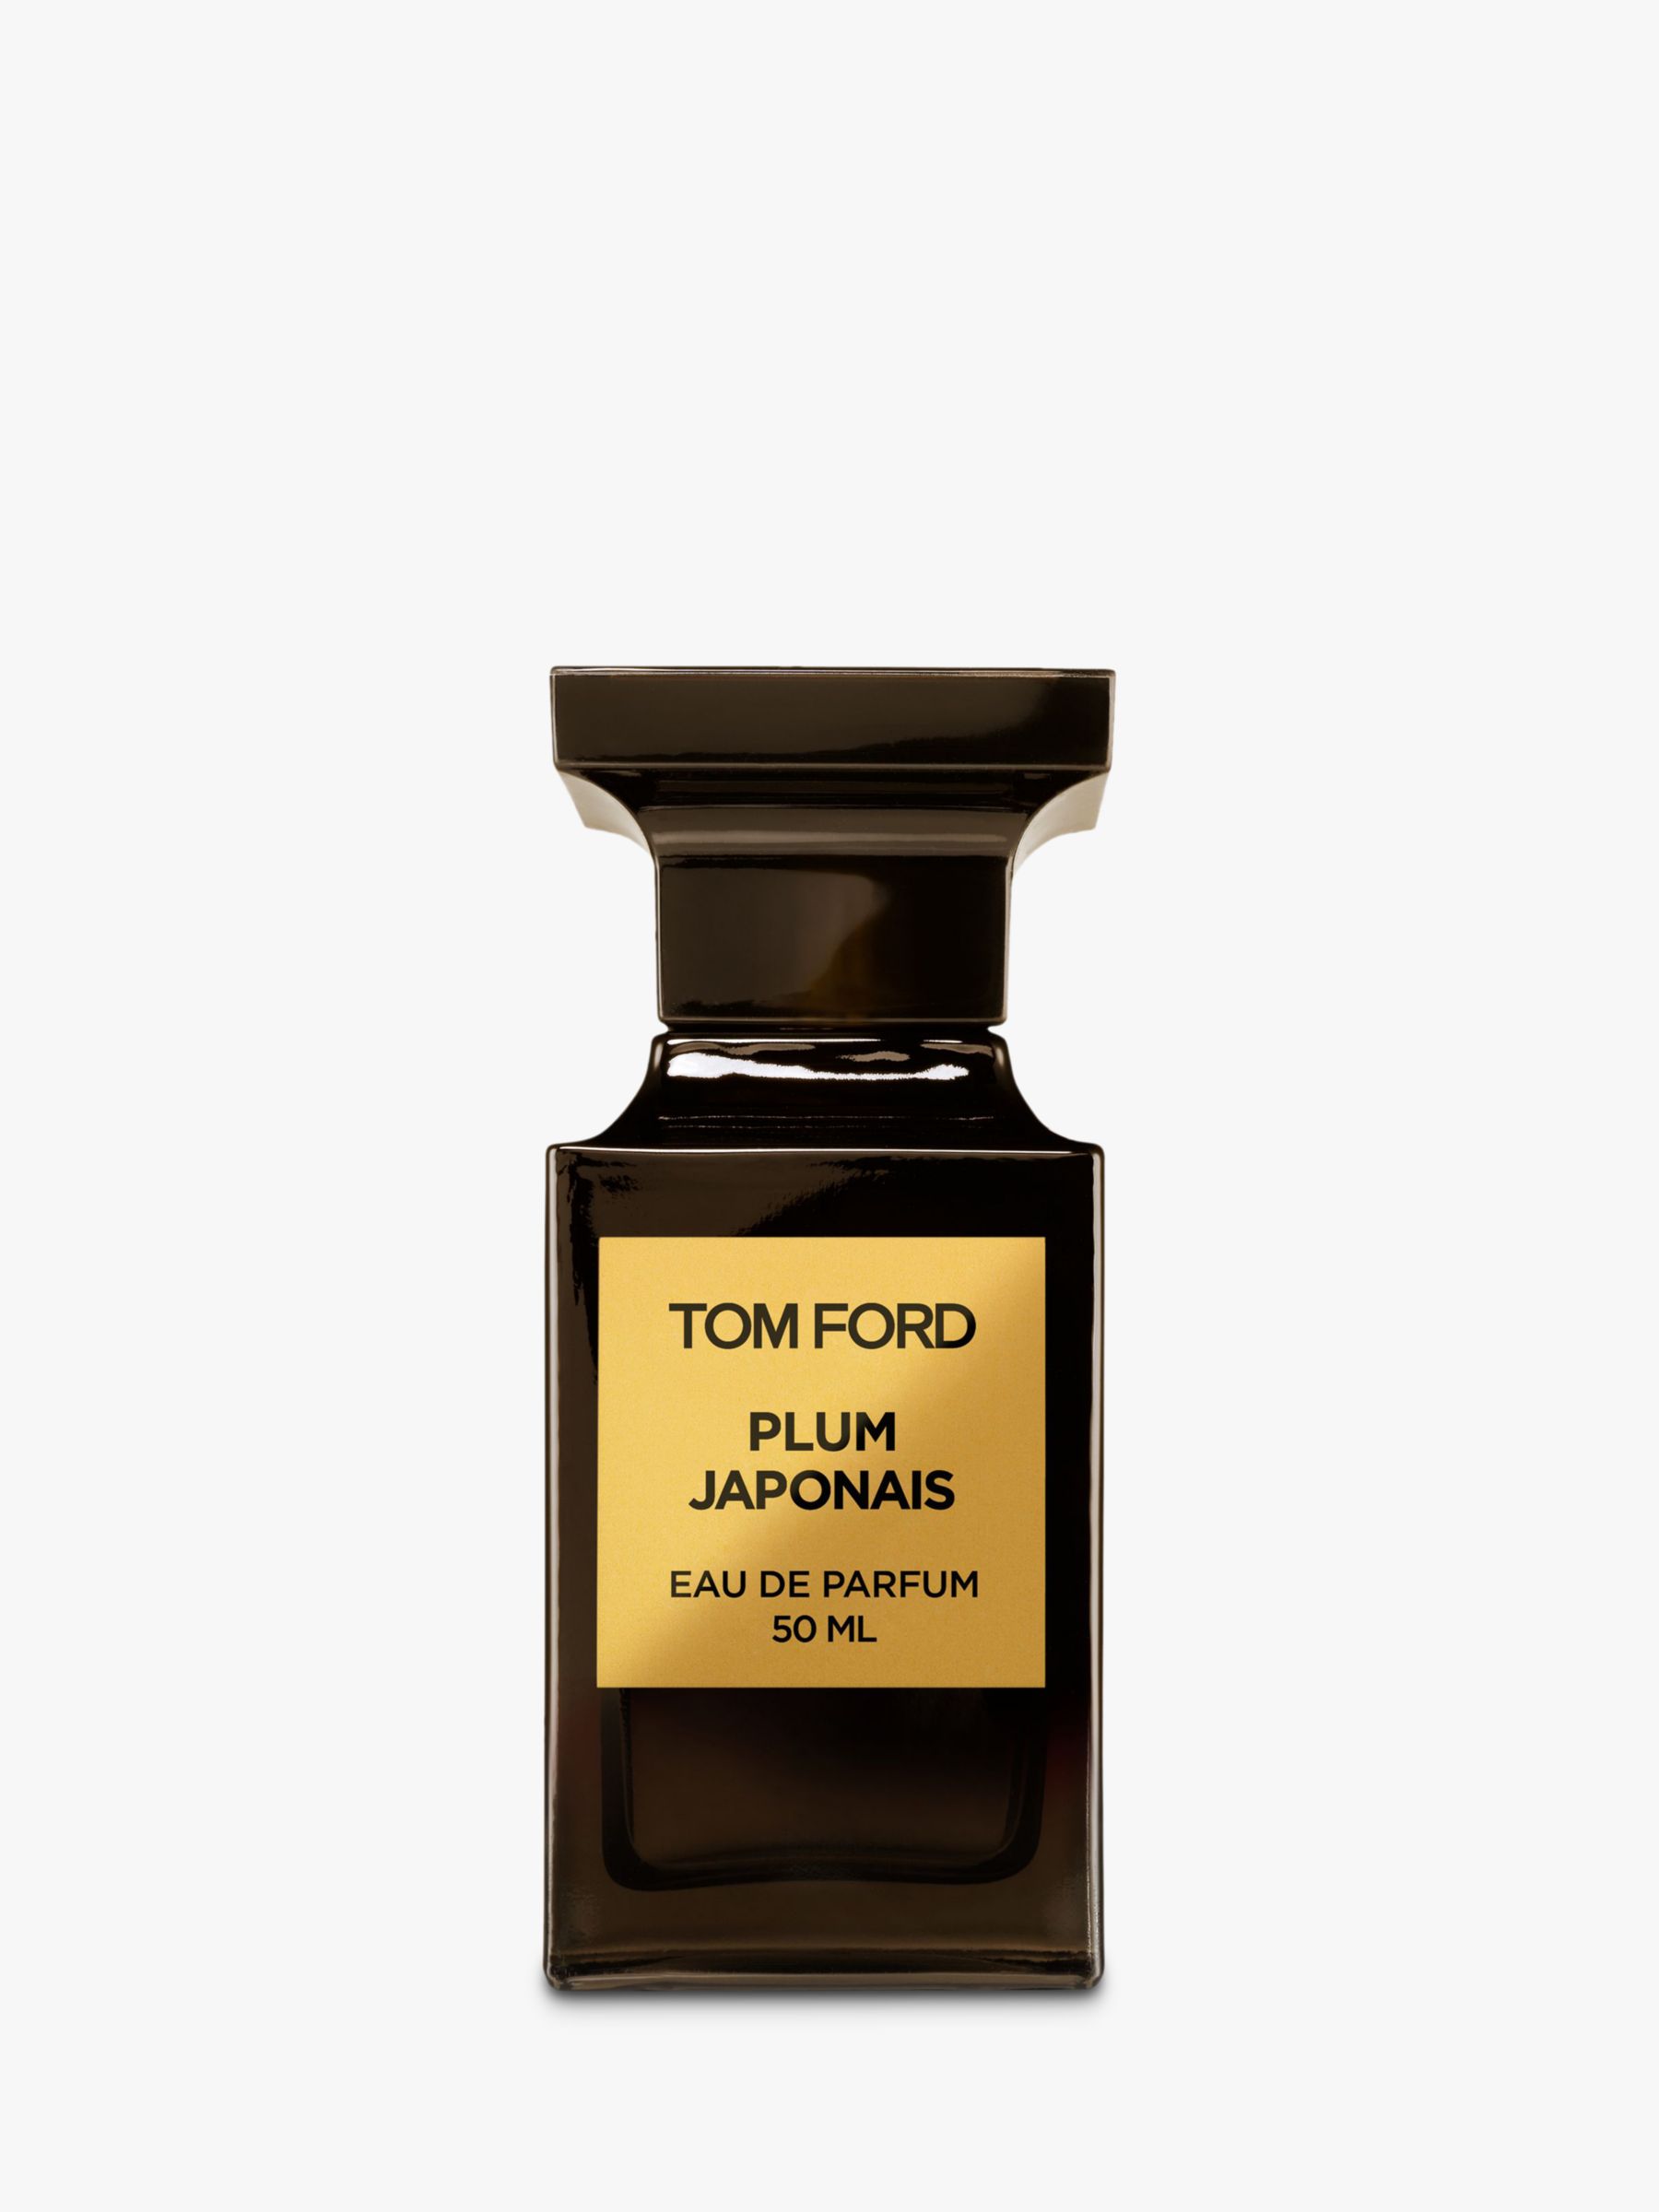 TOM FORD Private Blend Plum Japonais Eau de Parfum, 50ml